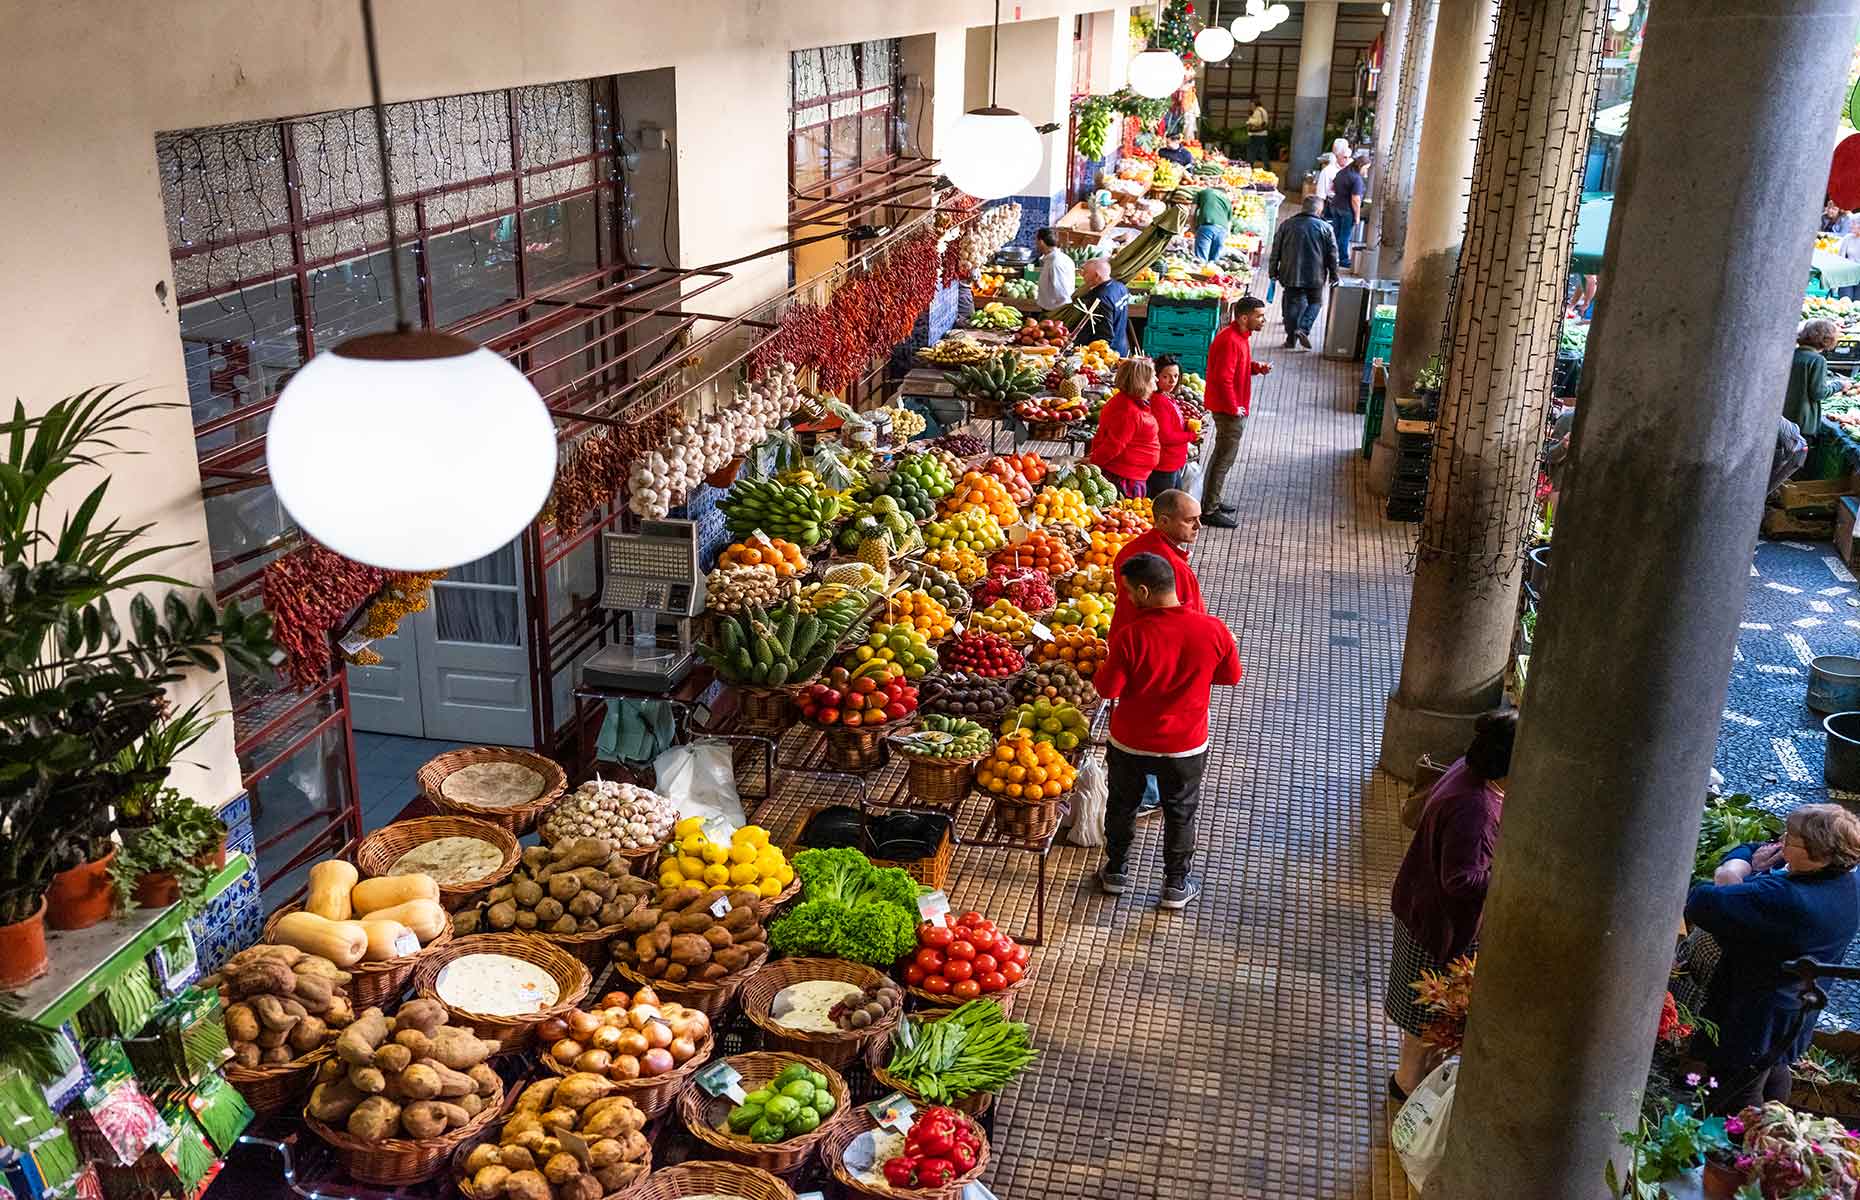 Mercado dos Lavradores, Funchal (Image: hbpro/Shutterstock)